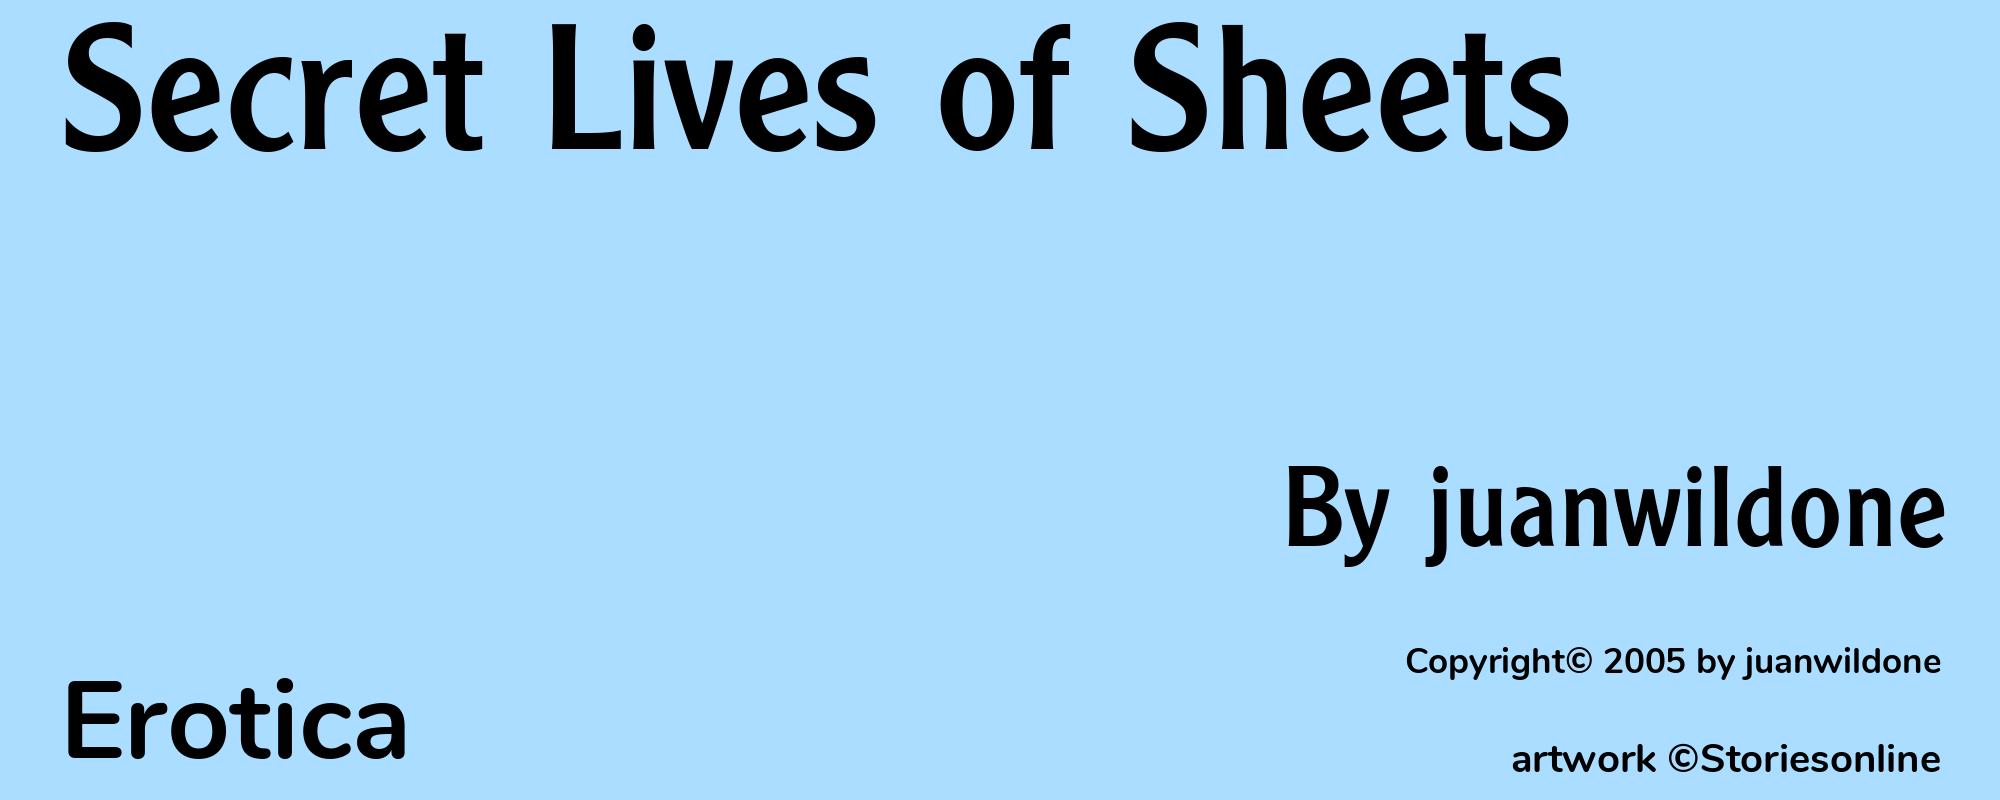 Secret Lives of Sheets - Cover